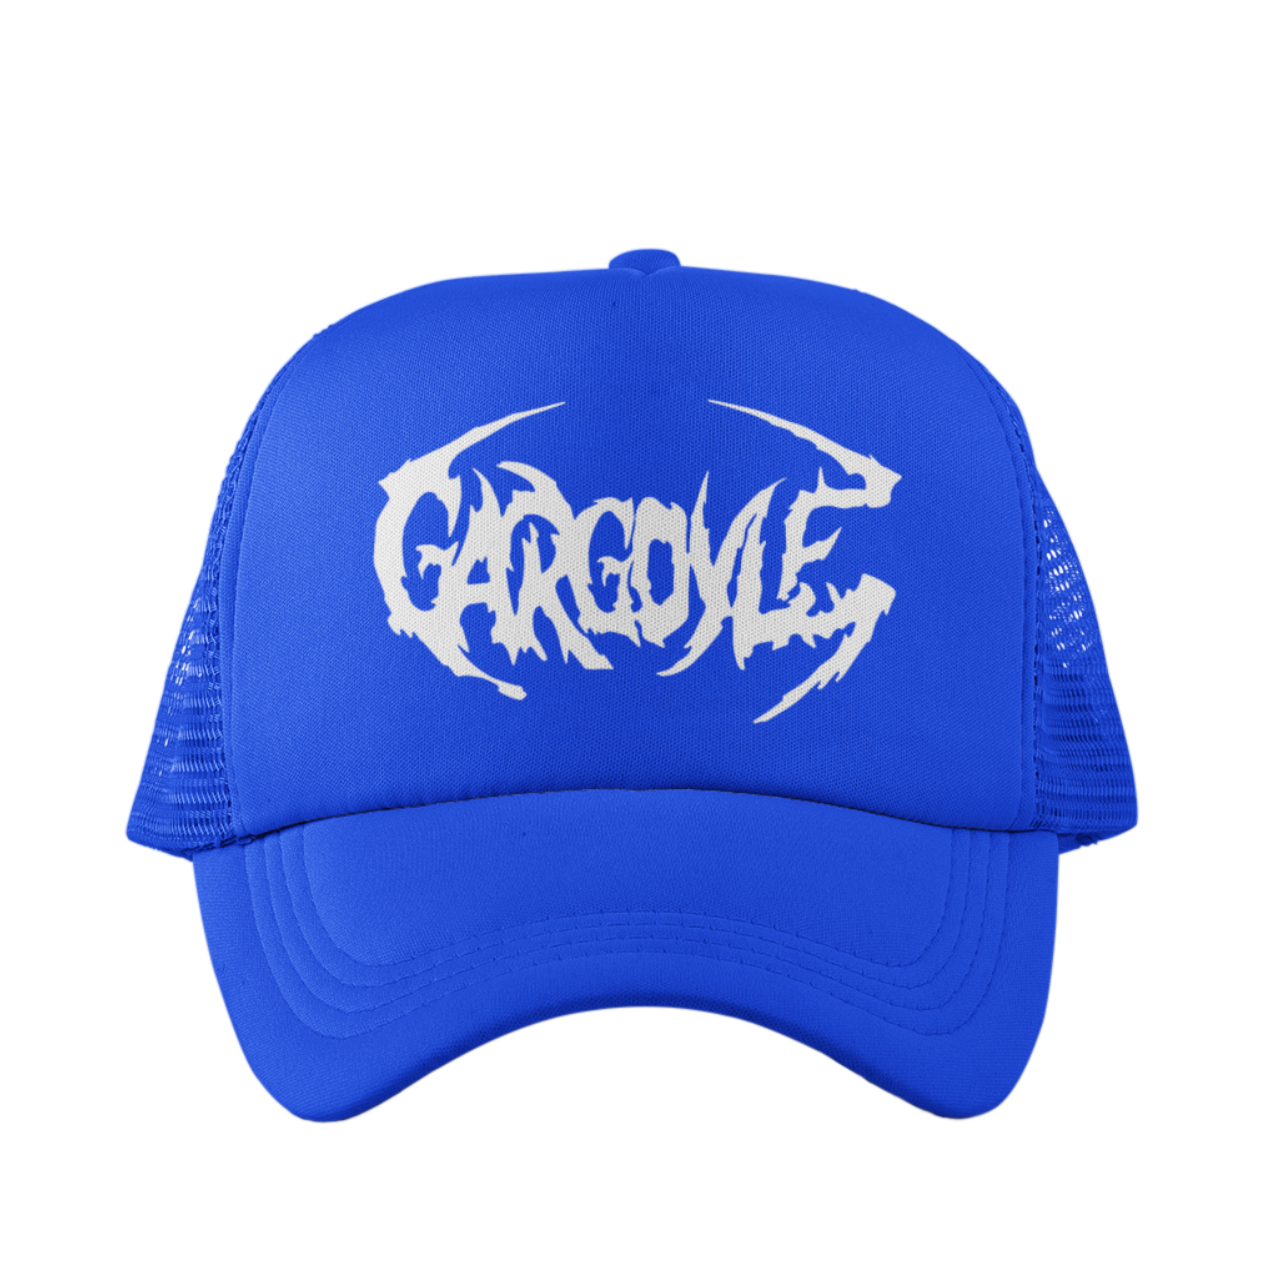 Organik Lyfestyle - Gargoyle G.A.N.G - Blue & White Hat